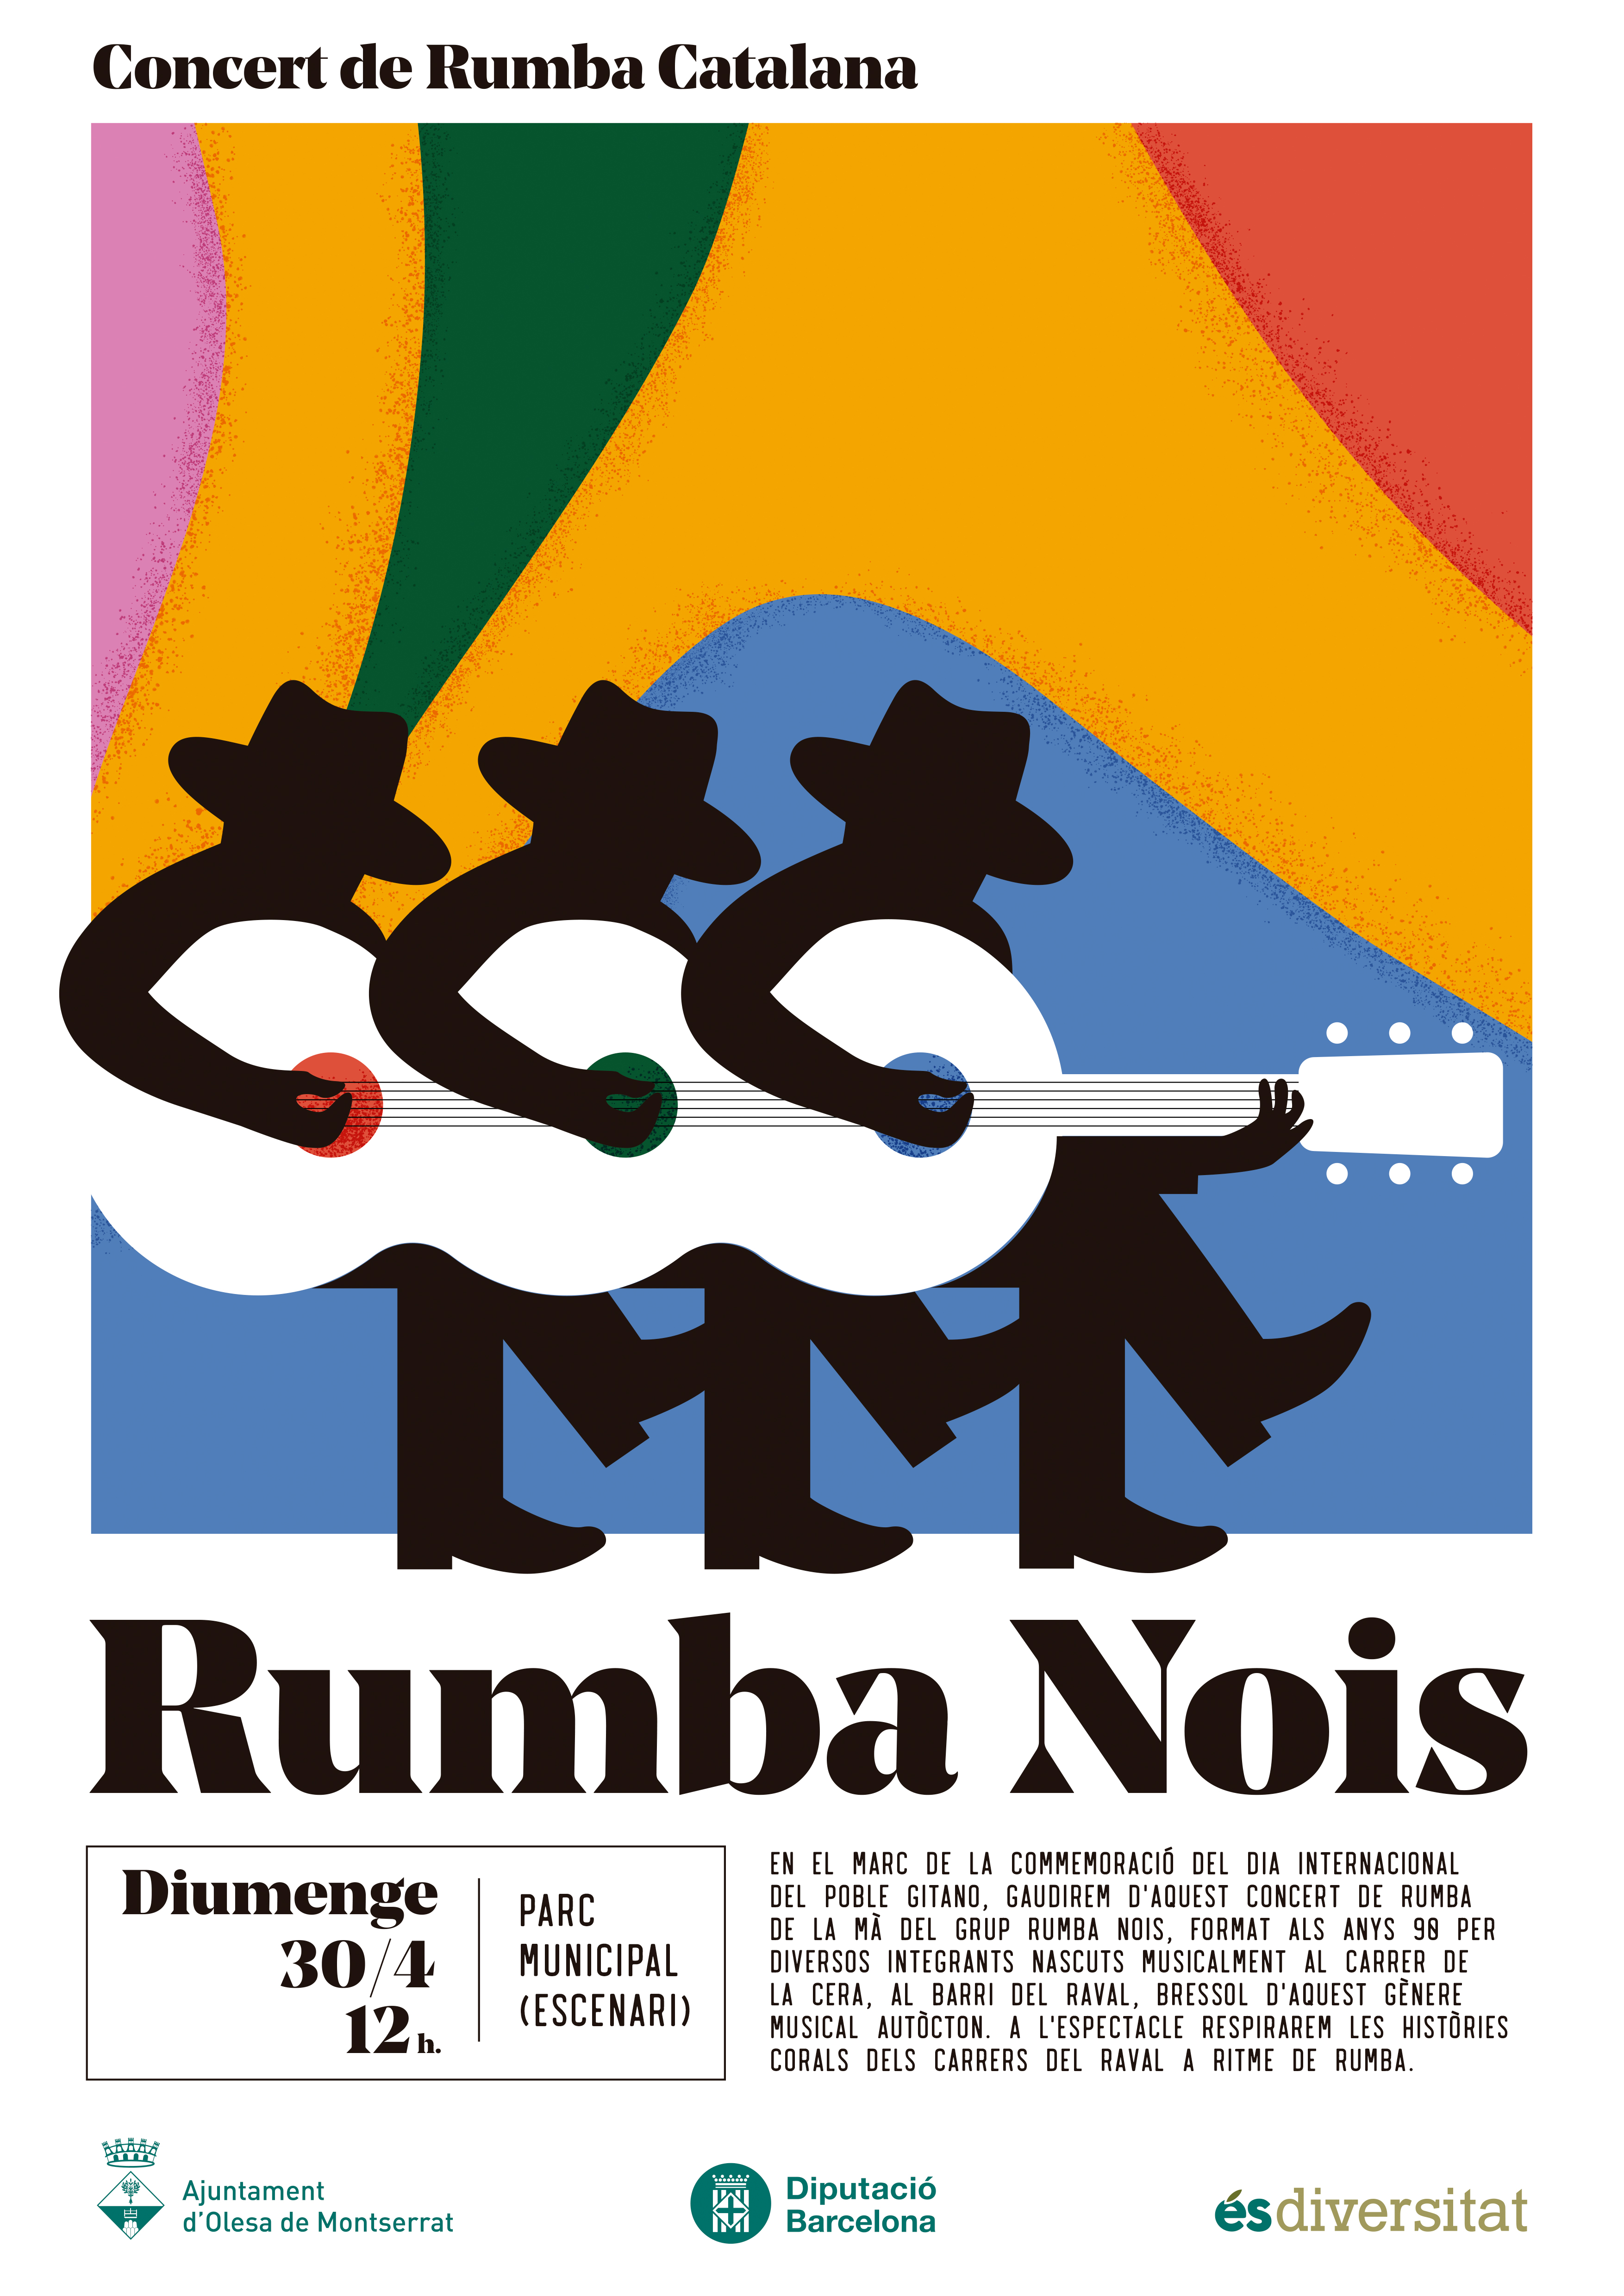 Concert dels Rumba Nois a Olesa